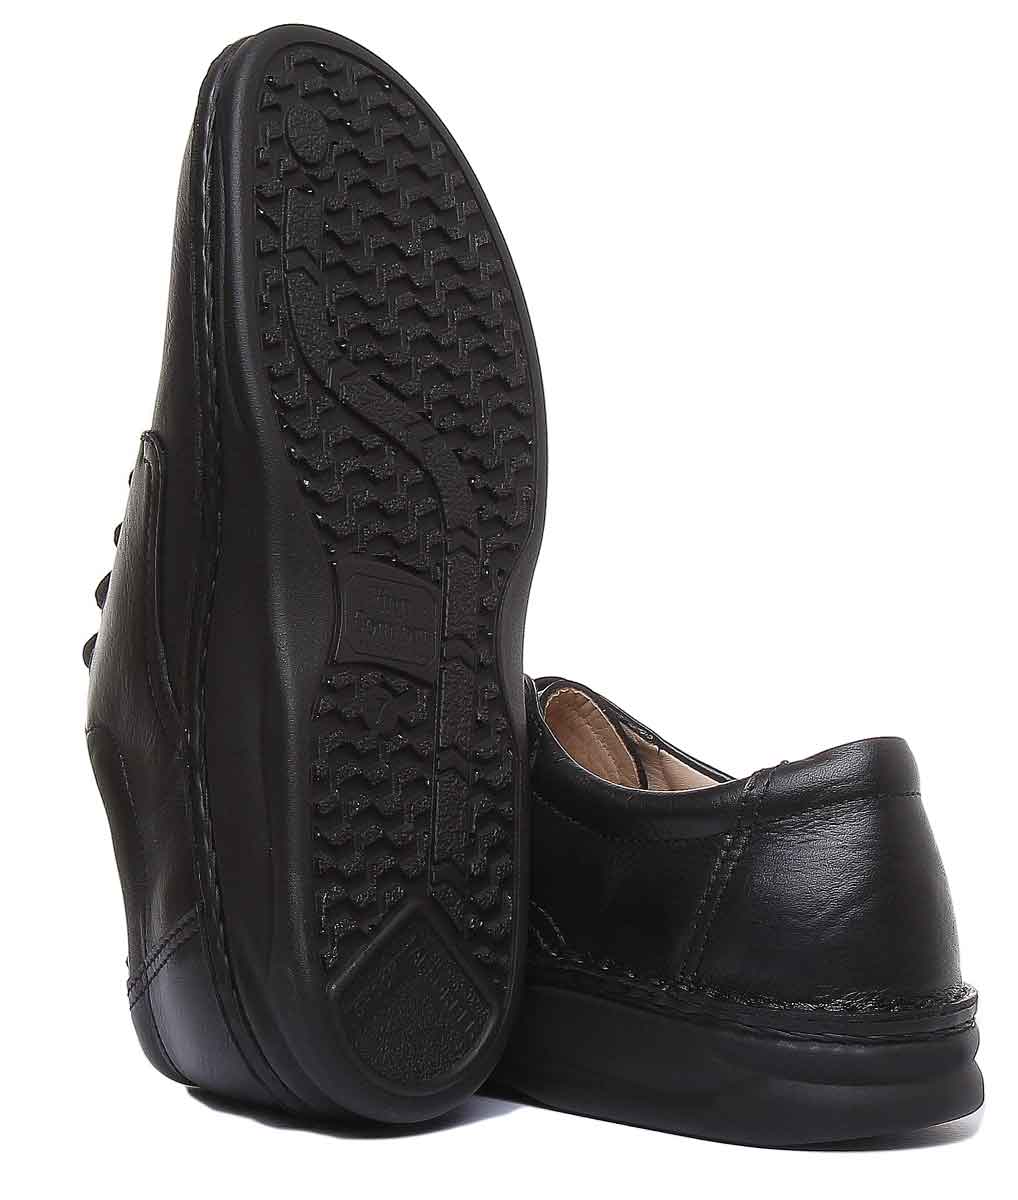 Finn Comfort Metz Zapatos Oxford con cordones para hombre en negro